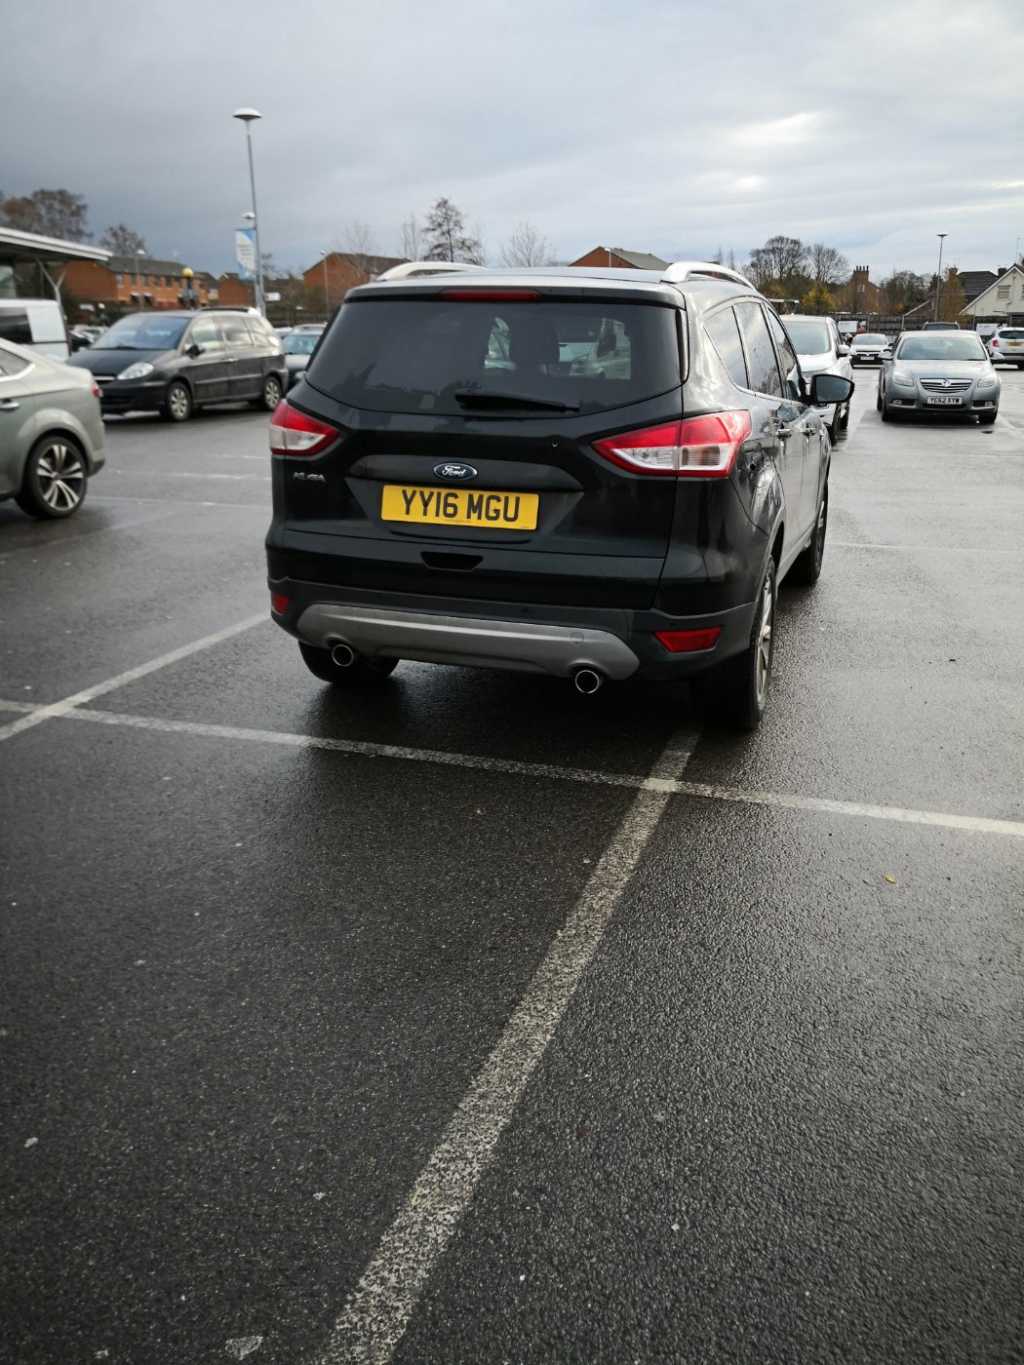 YY16 MGU displaying crap parking